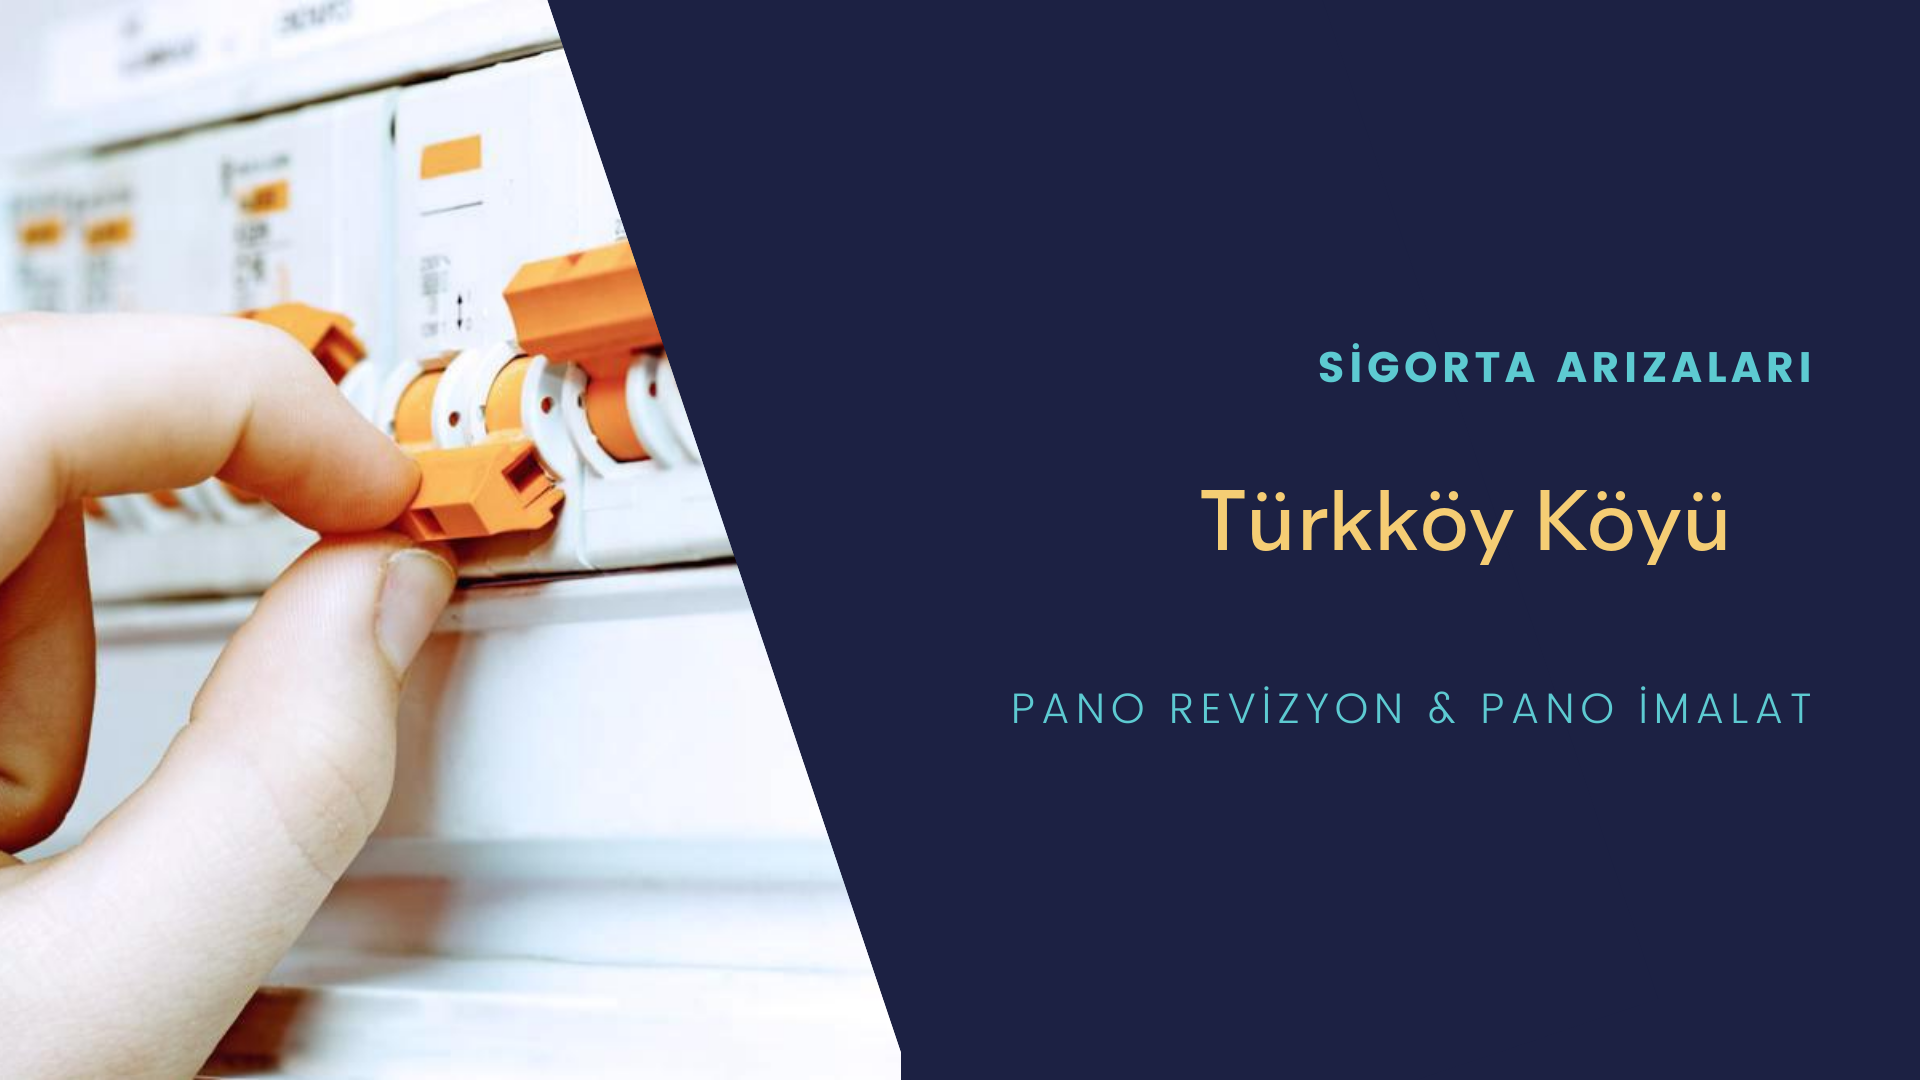 Türkköy Köyü Sigorta Arızaları İçin Profesyonel Elektrikçi ustalarımızı dilediğiniz zaman arayabilir talepte bulunabilirsiniz.